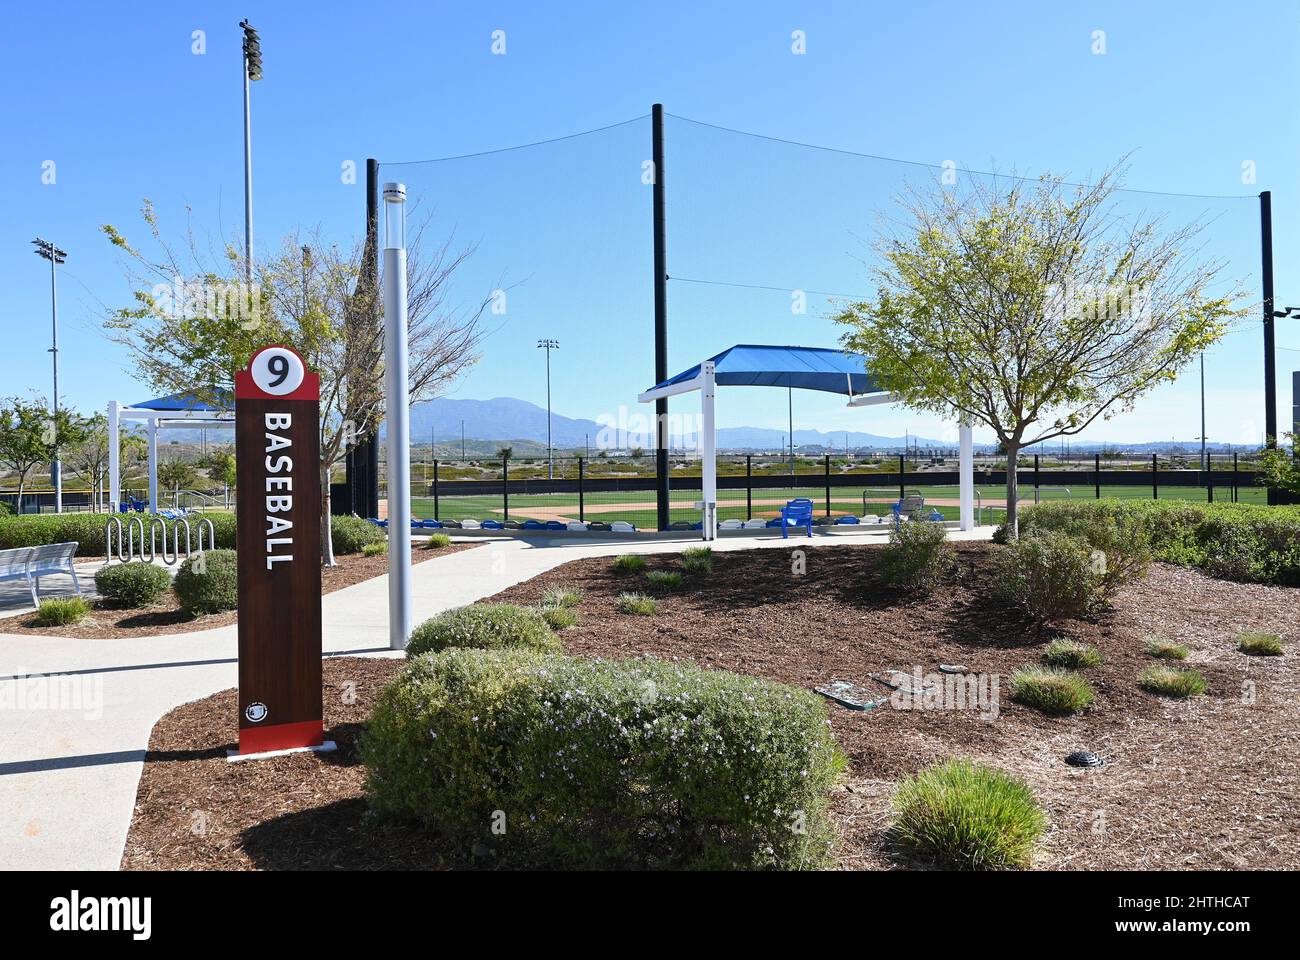 IRVINE, CALIFORNIE - 25 FÉVRIER 2022 : panneau pour Baseball Field 9 au Orange County Great Park. Banque D'Images